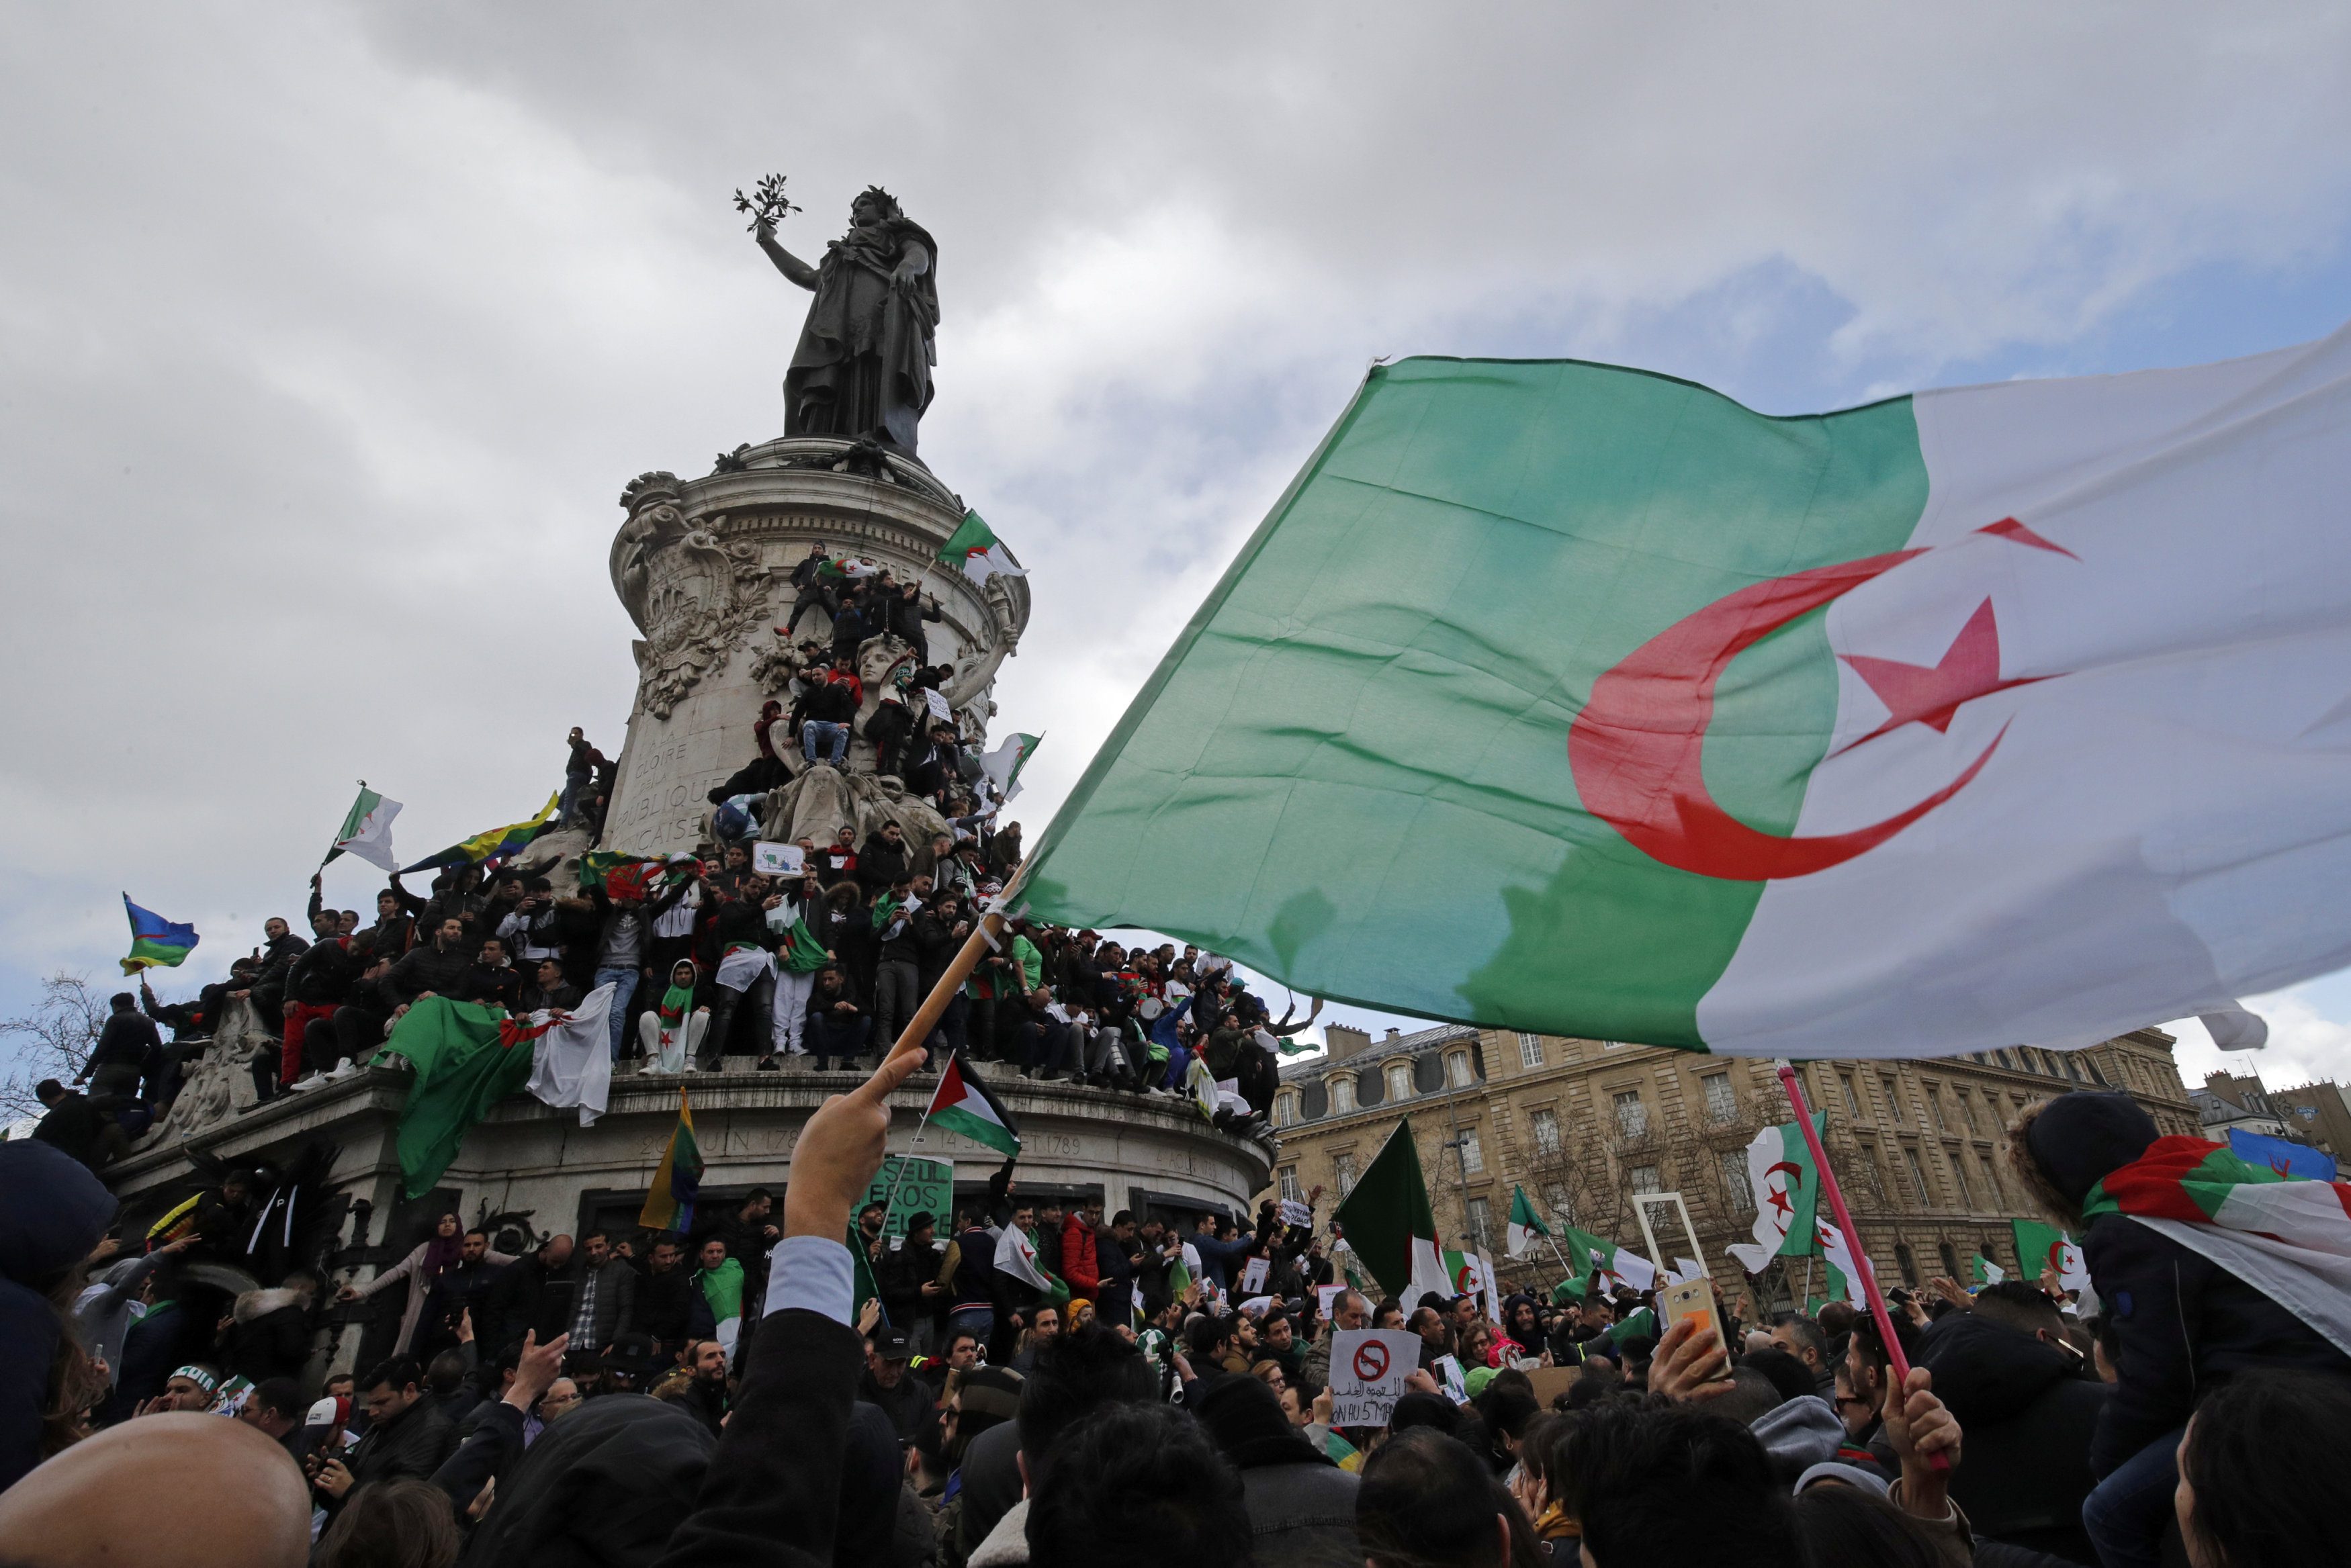 العشرية السوداء أحداث دموية لا ينساها الجزائريون كيف بدأت وماذا كان طريق الخلاص